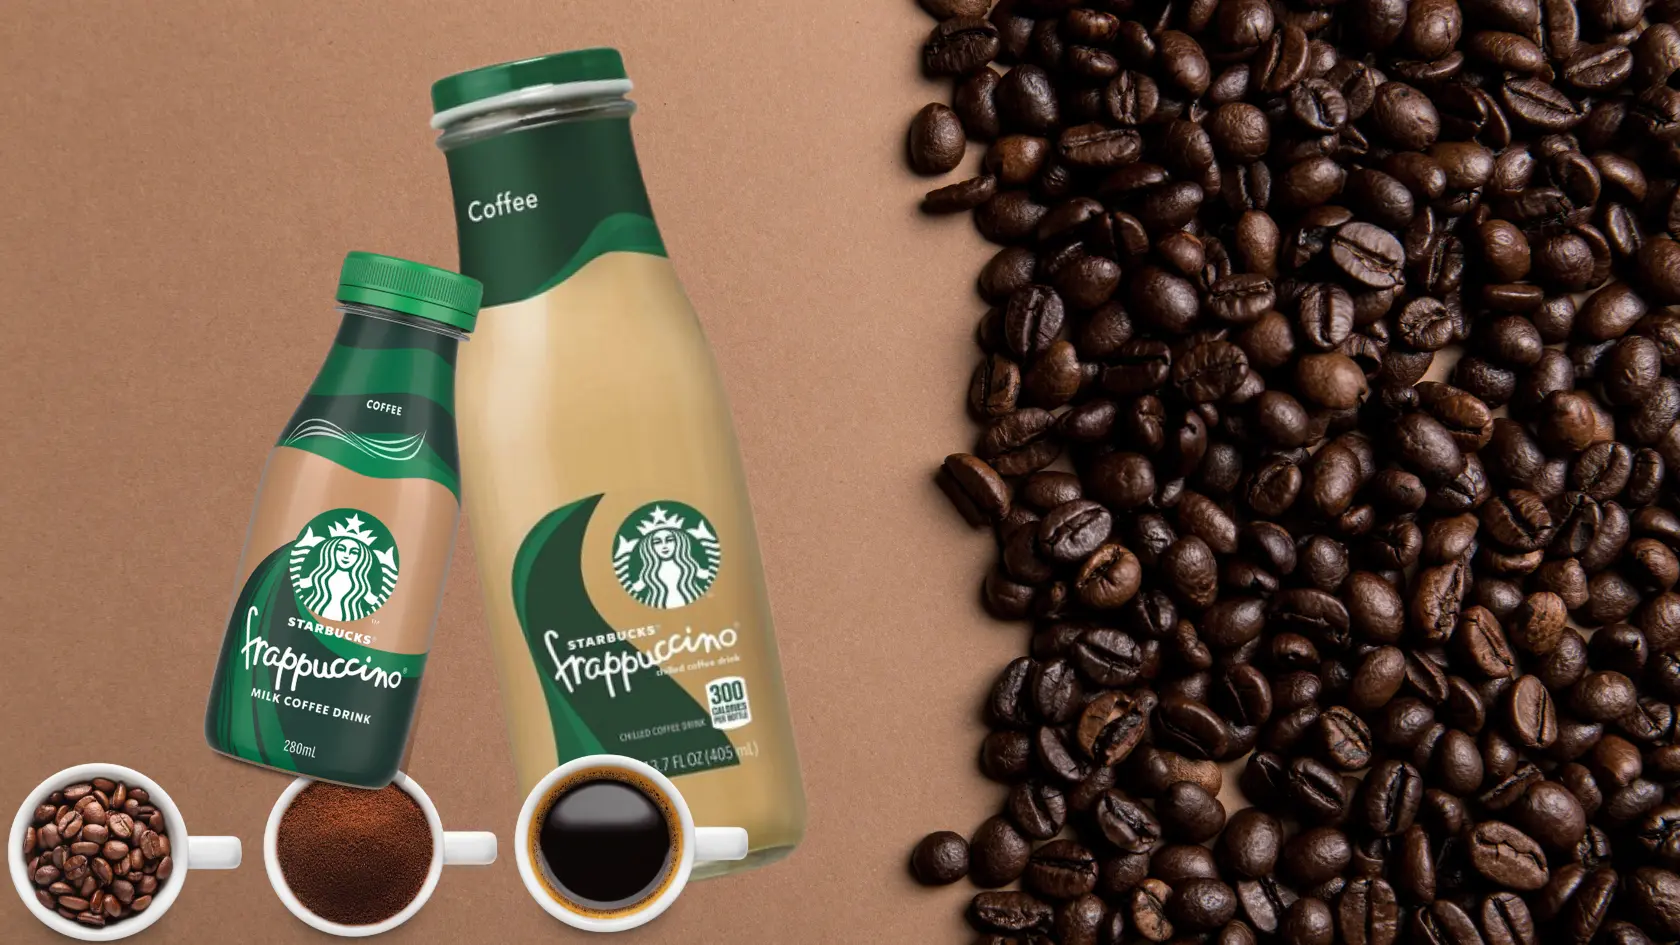 How much caffeine in Starbucks Frappuccino bottle